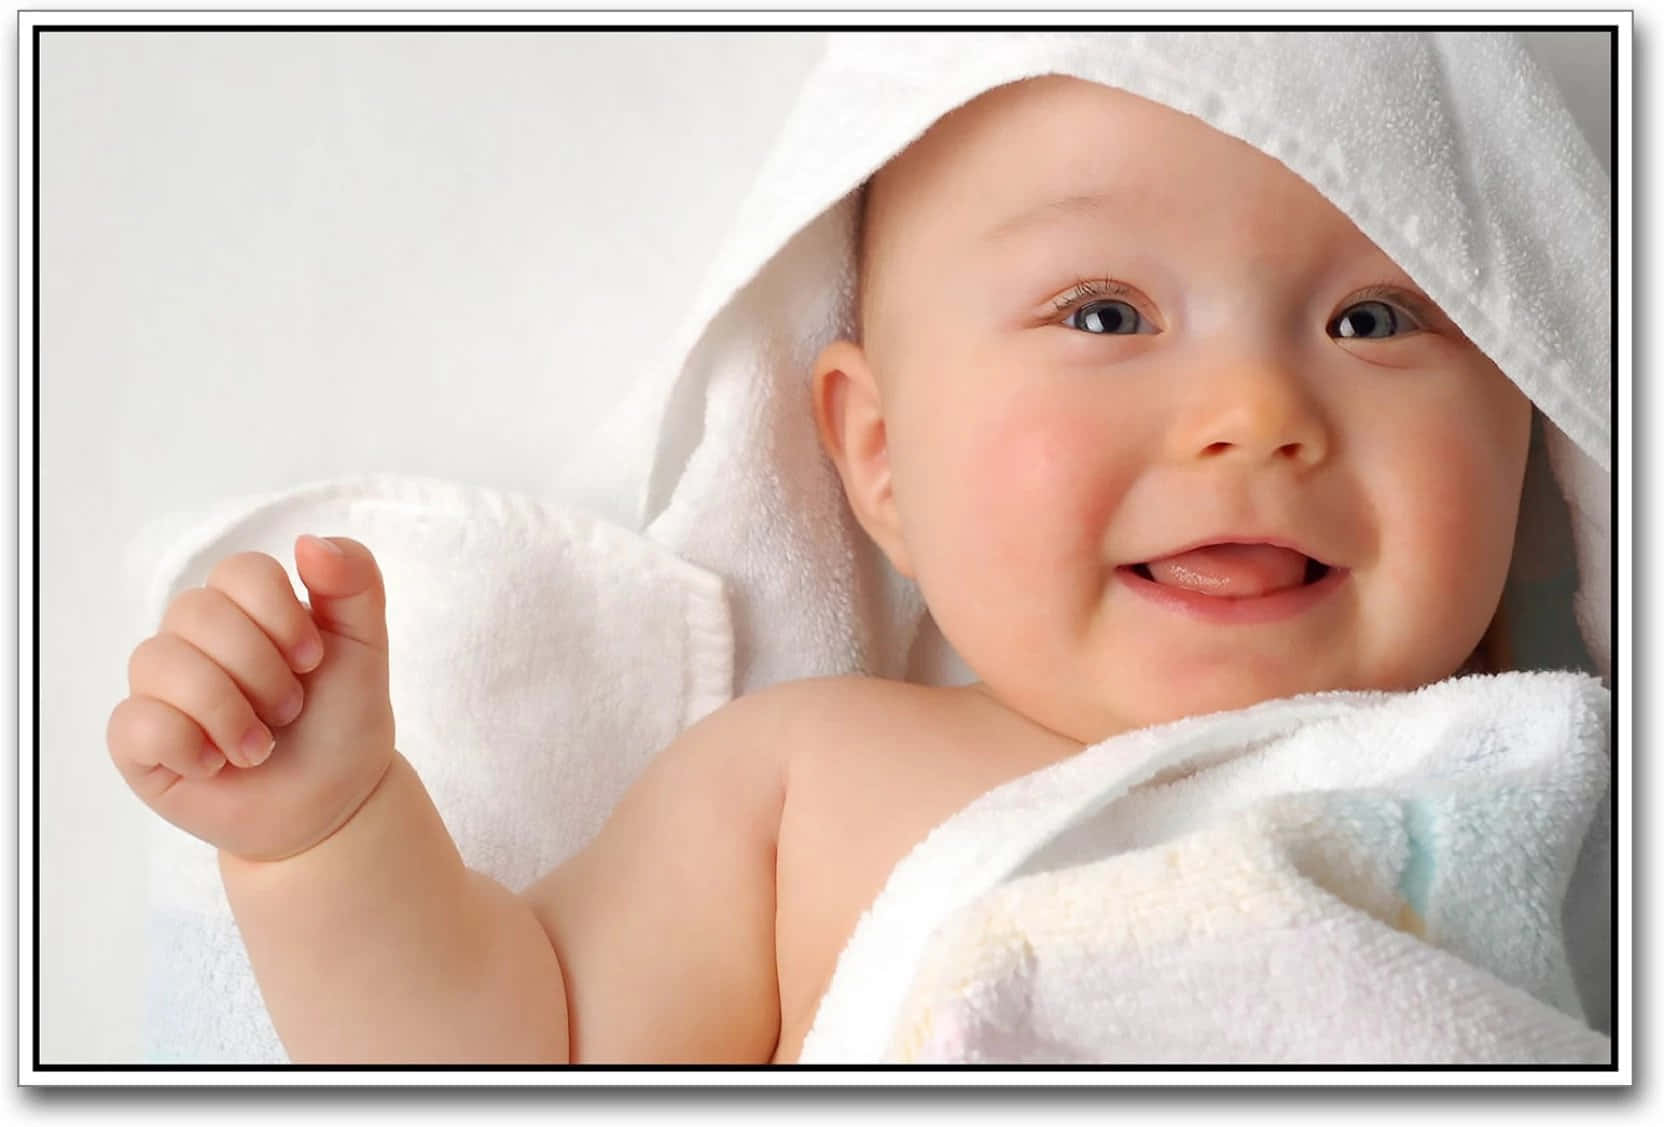 Imagende Un Bebé Blanco Sonriendo